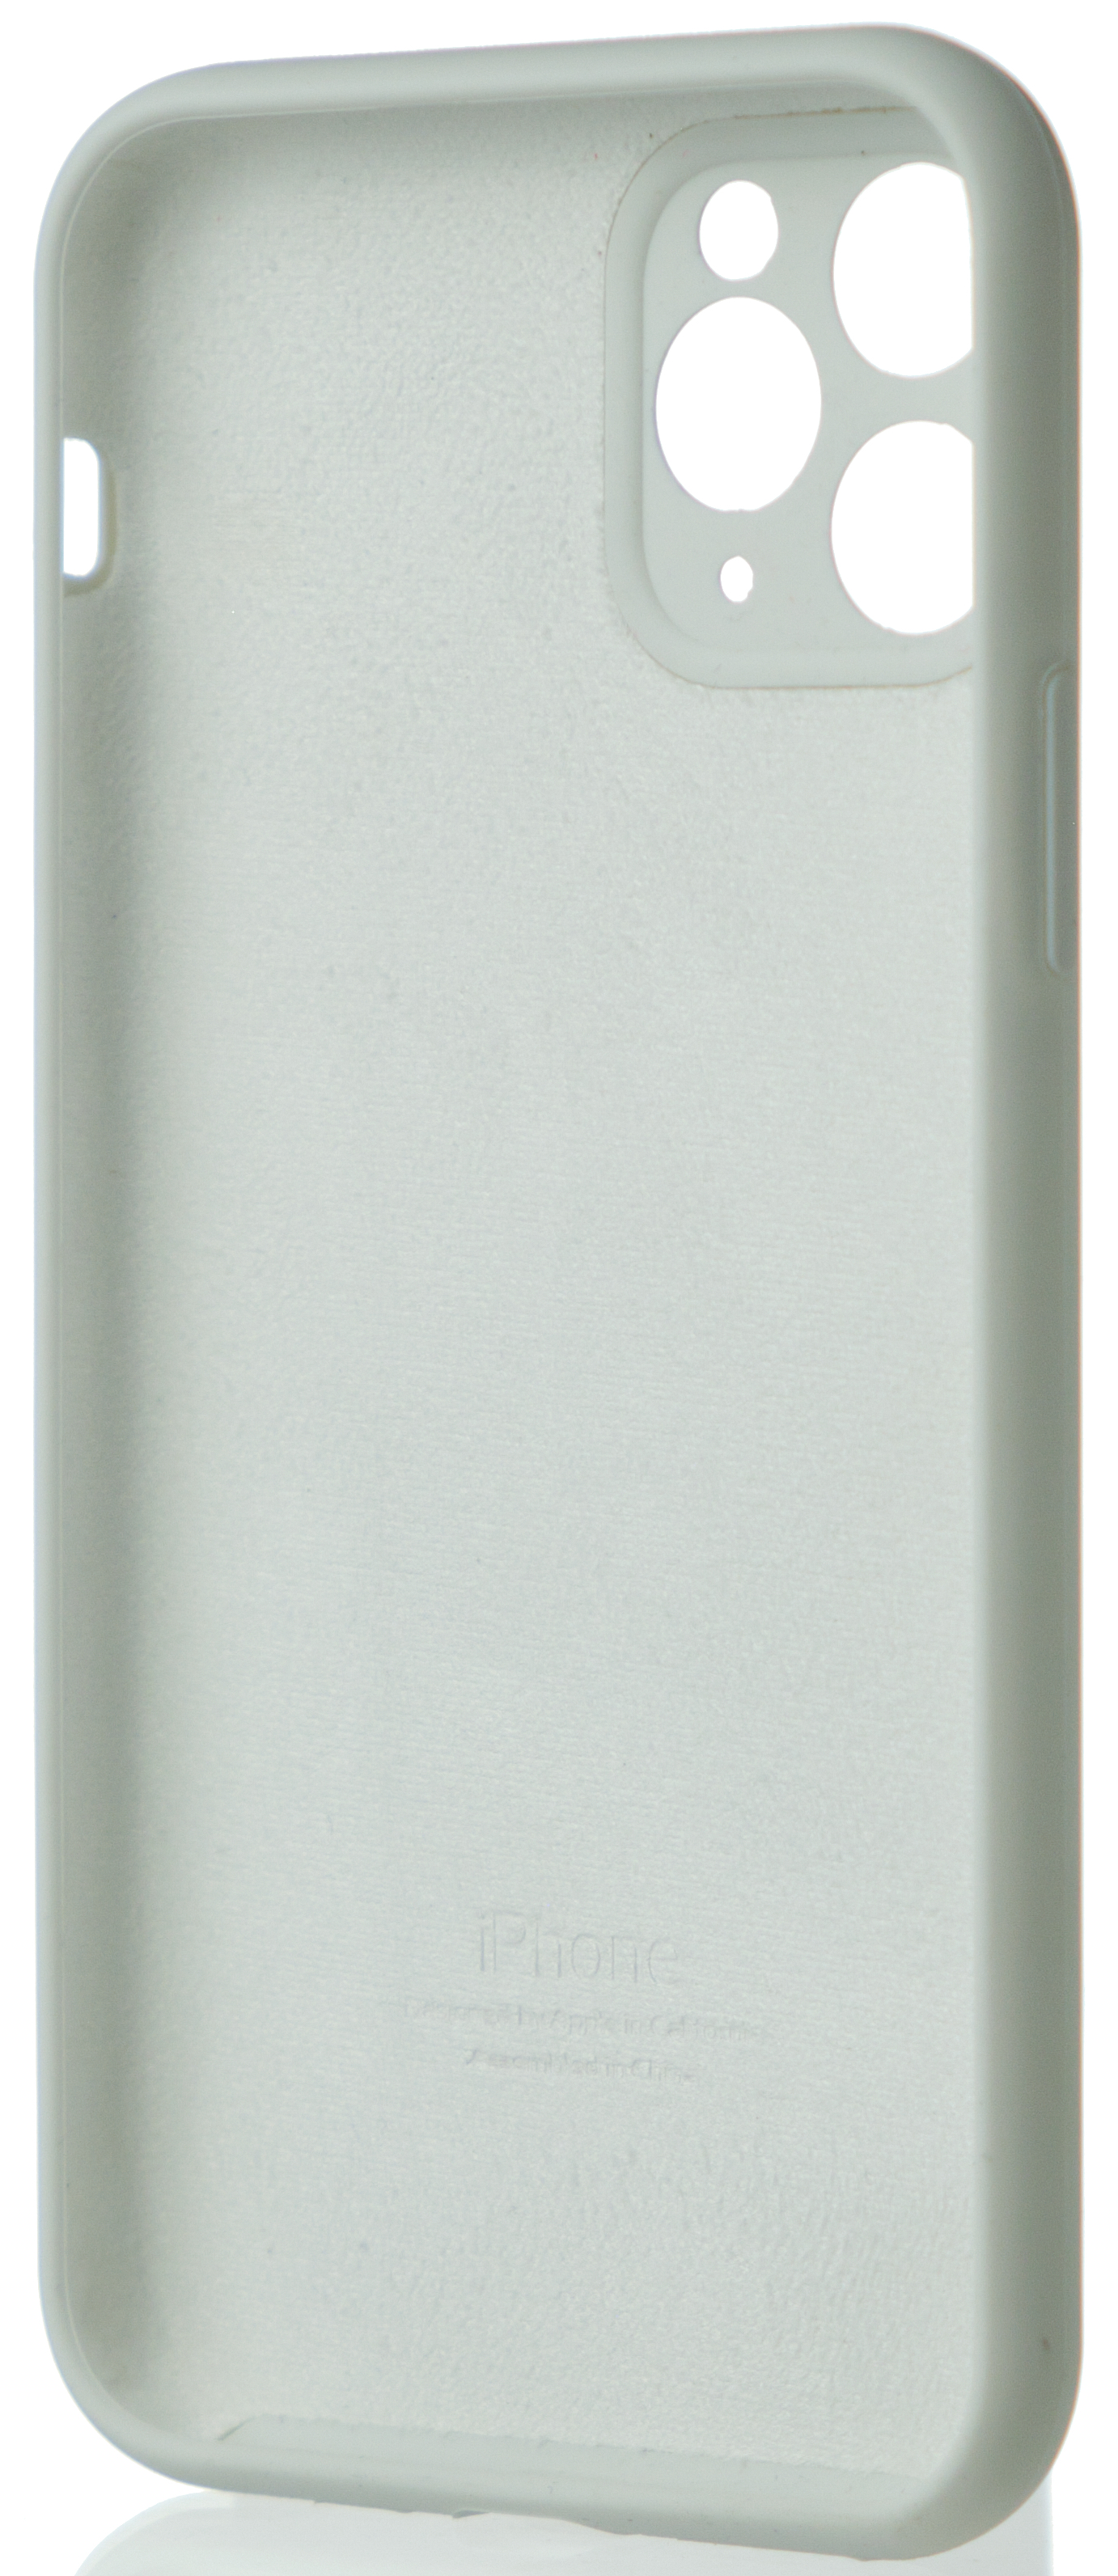 Чехол Silicone Case полная защита для iPhone 11 Pro белый